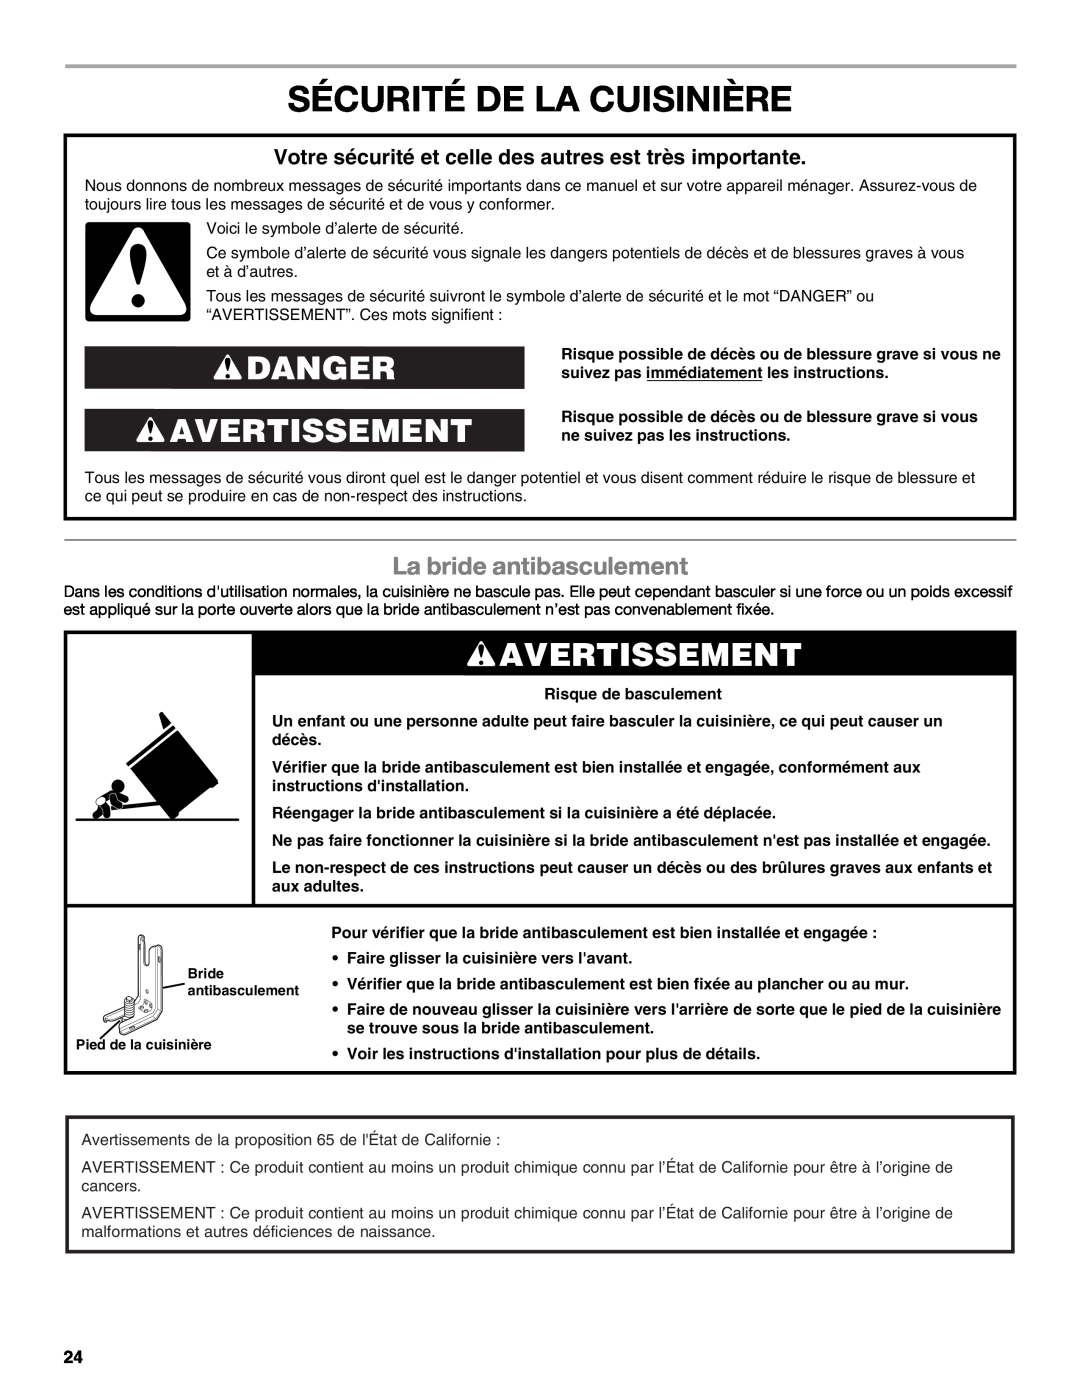 Whirlpool GGG390LXB manual Sécurité De La Cuisinière, Danger Avertissement, La bride antibasculement, Risque de basculement 